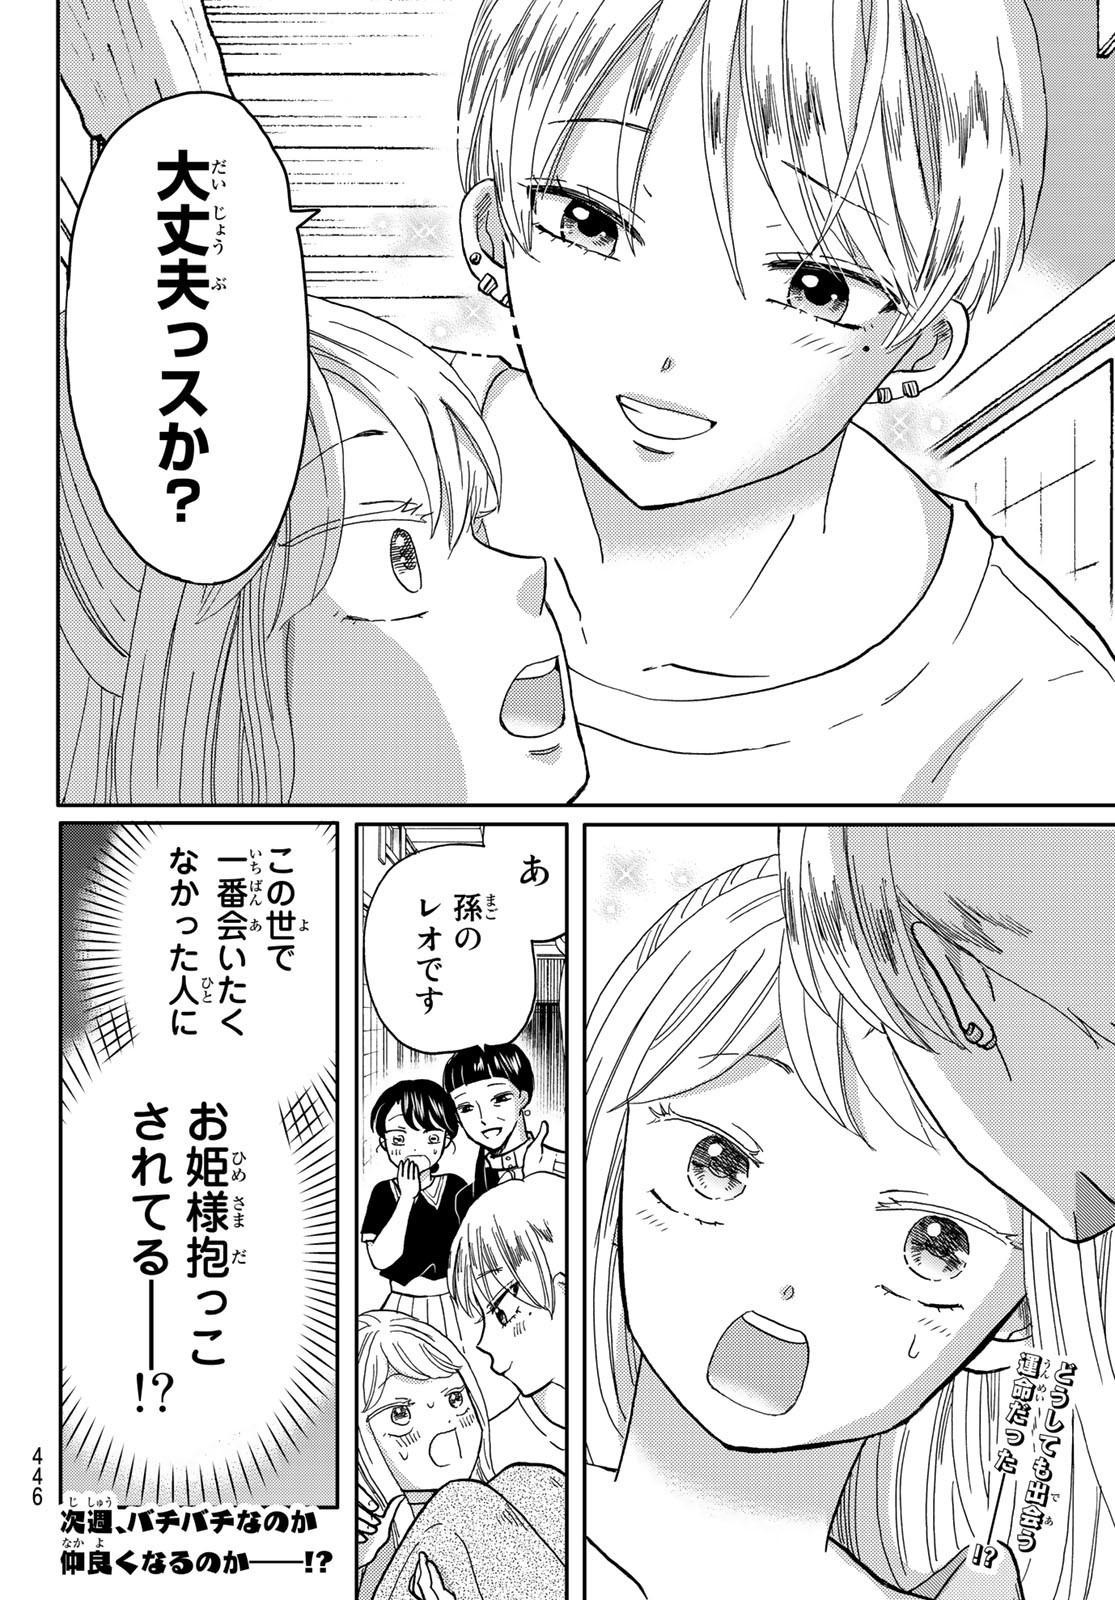 Hinata-san, Hoshino desu. - Chapter 036 - Page 10